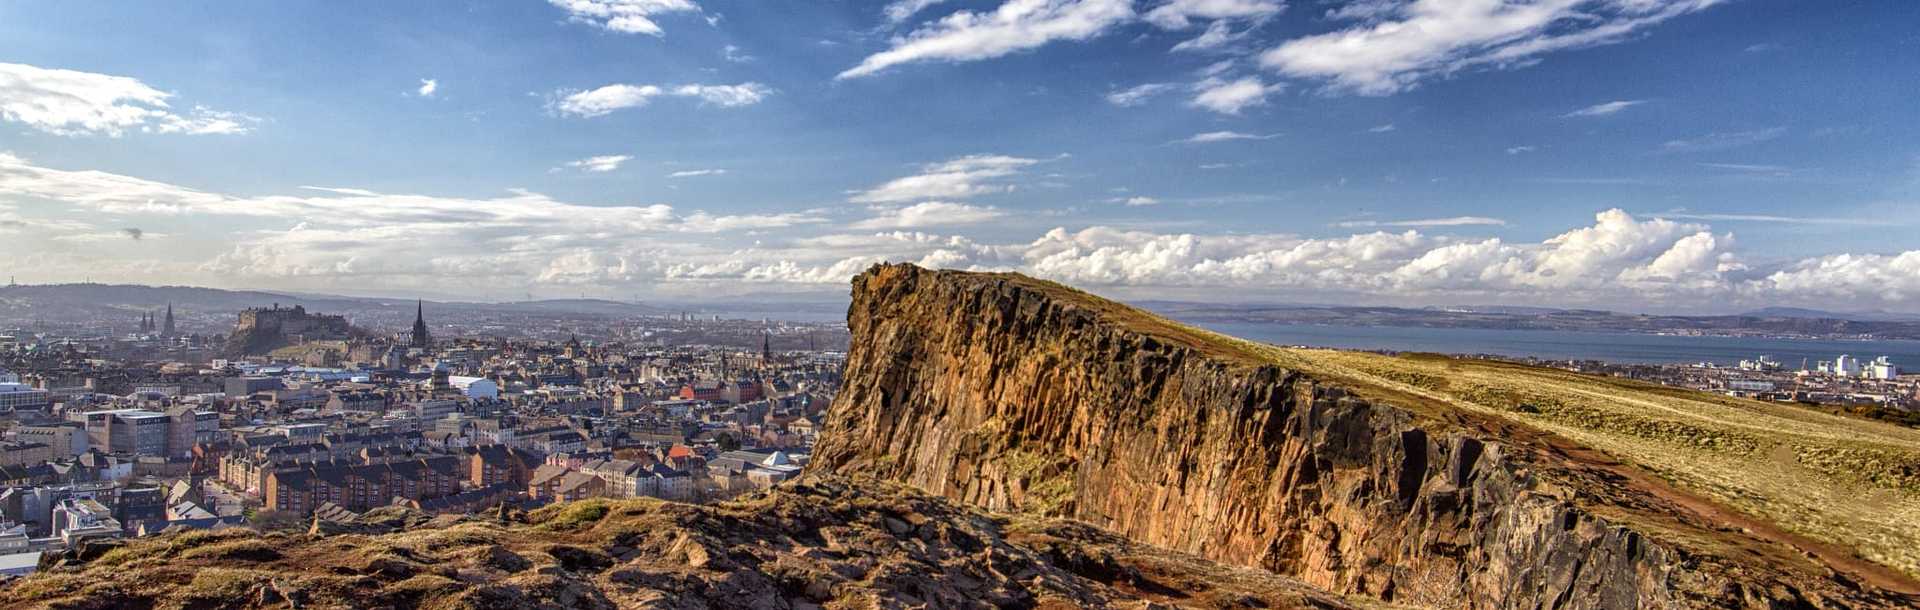 Edinburgh, Scotland Panorama